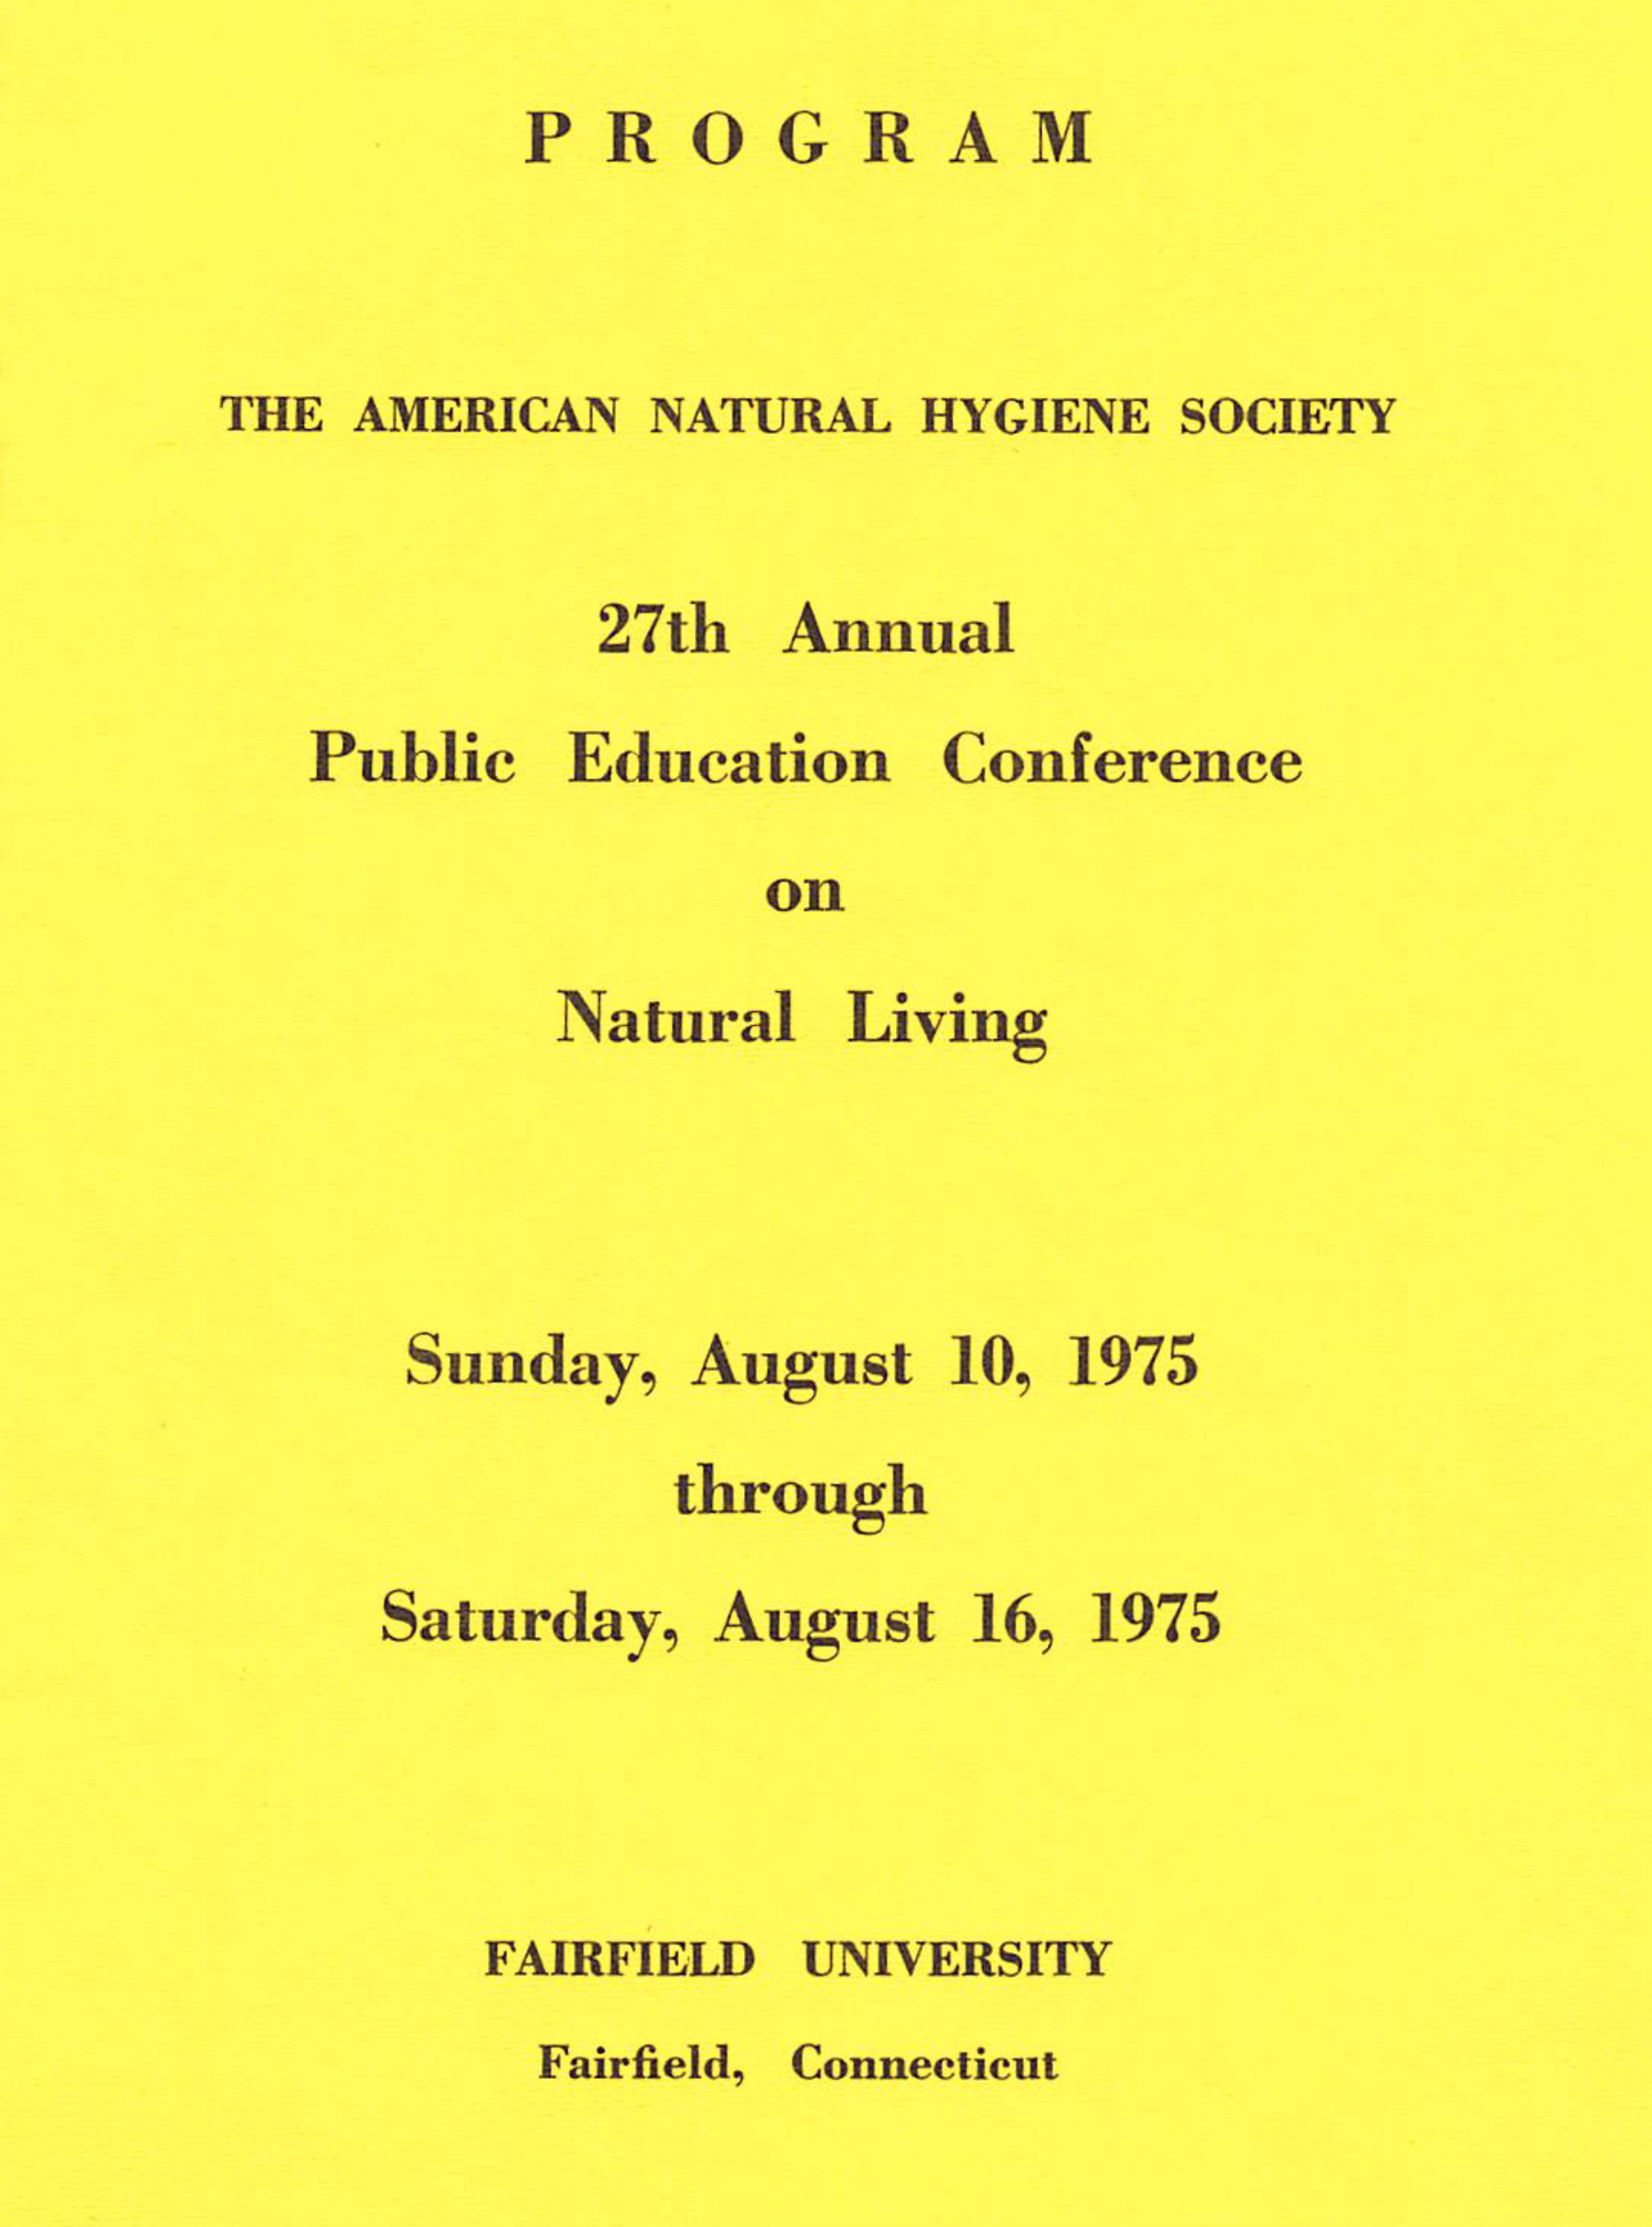 Conference Program. Connecticut, 1975